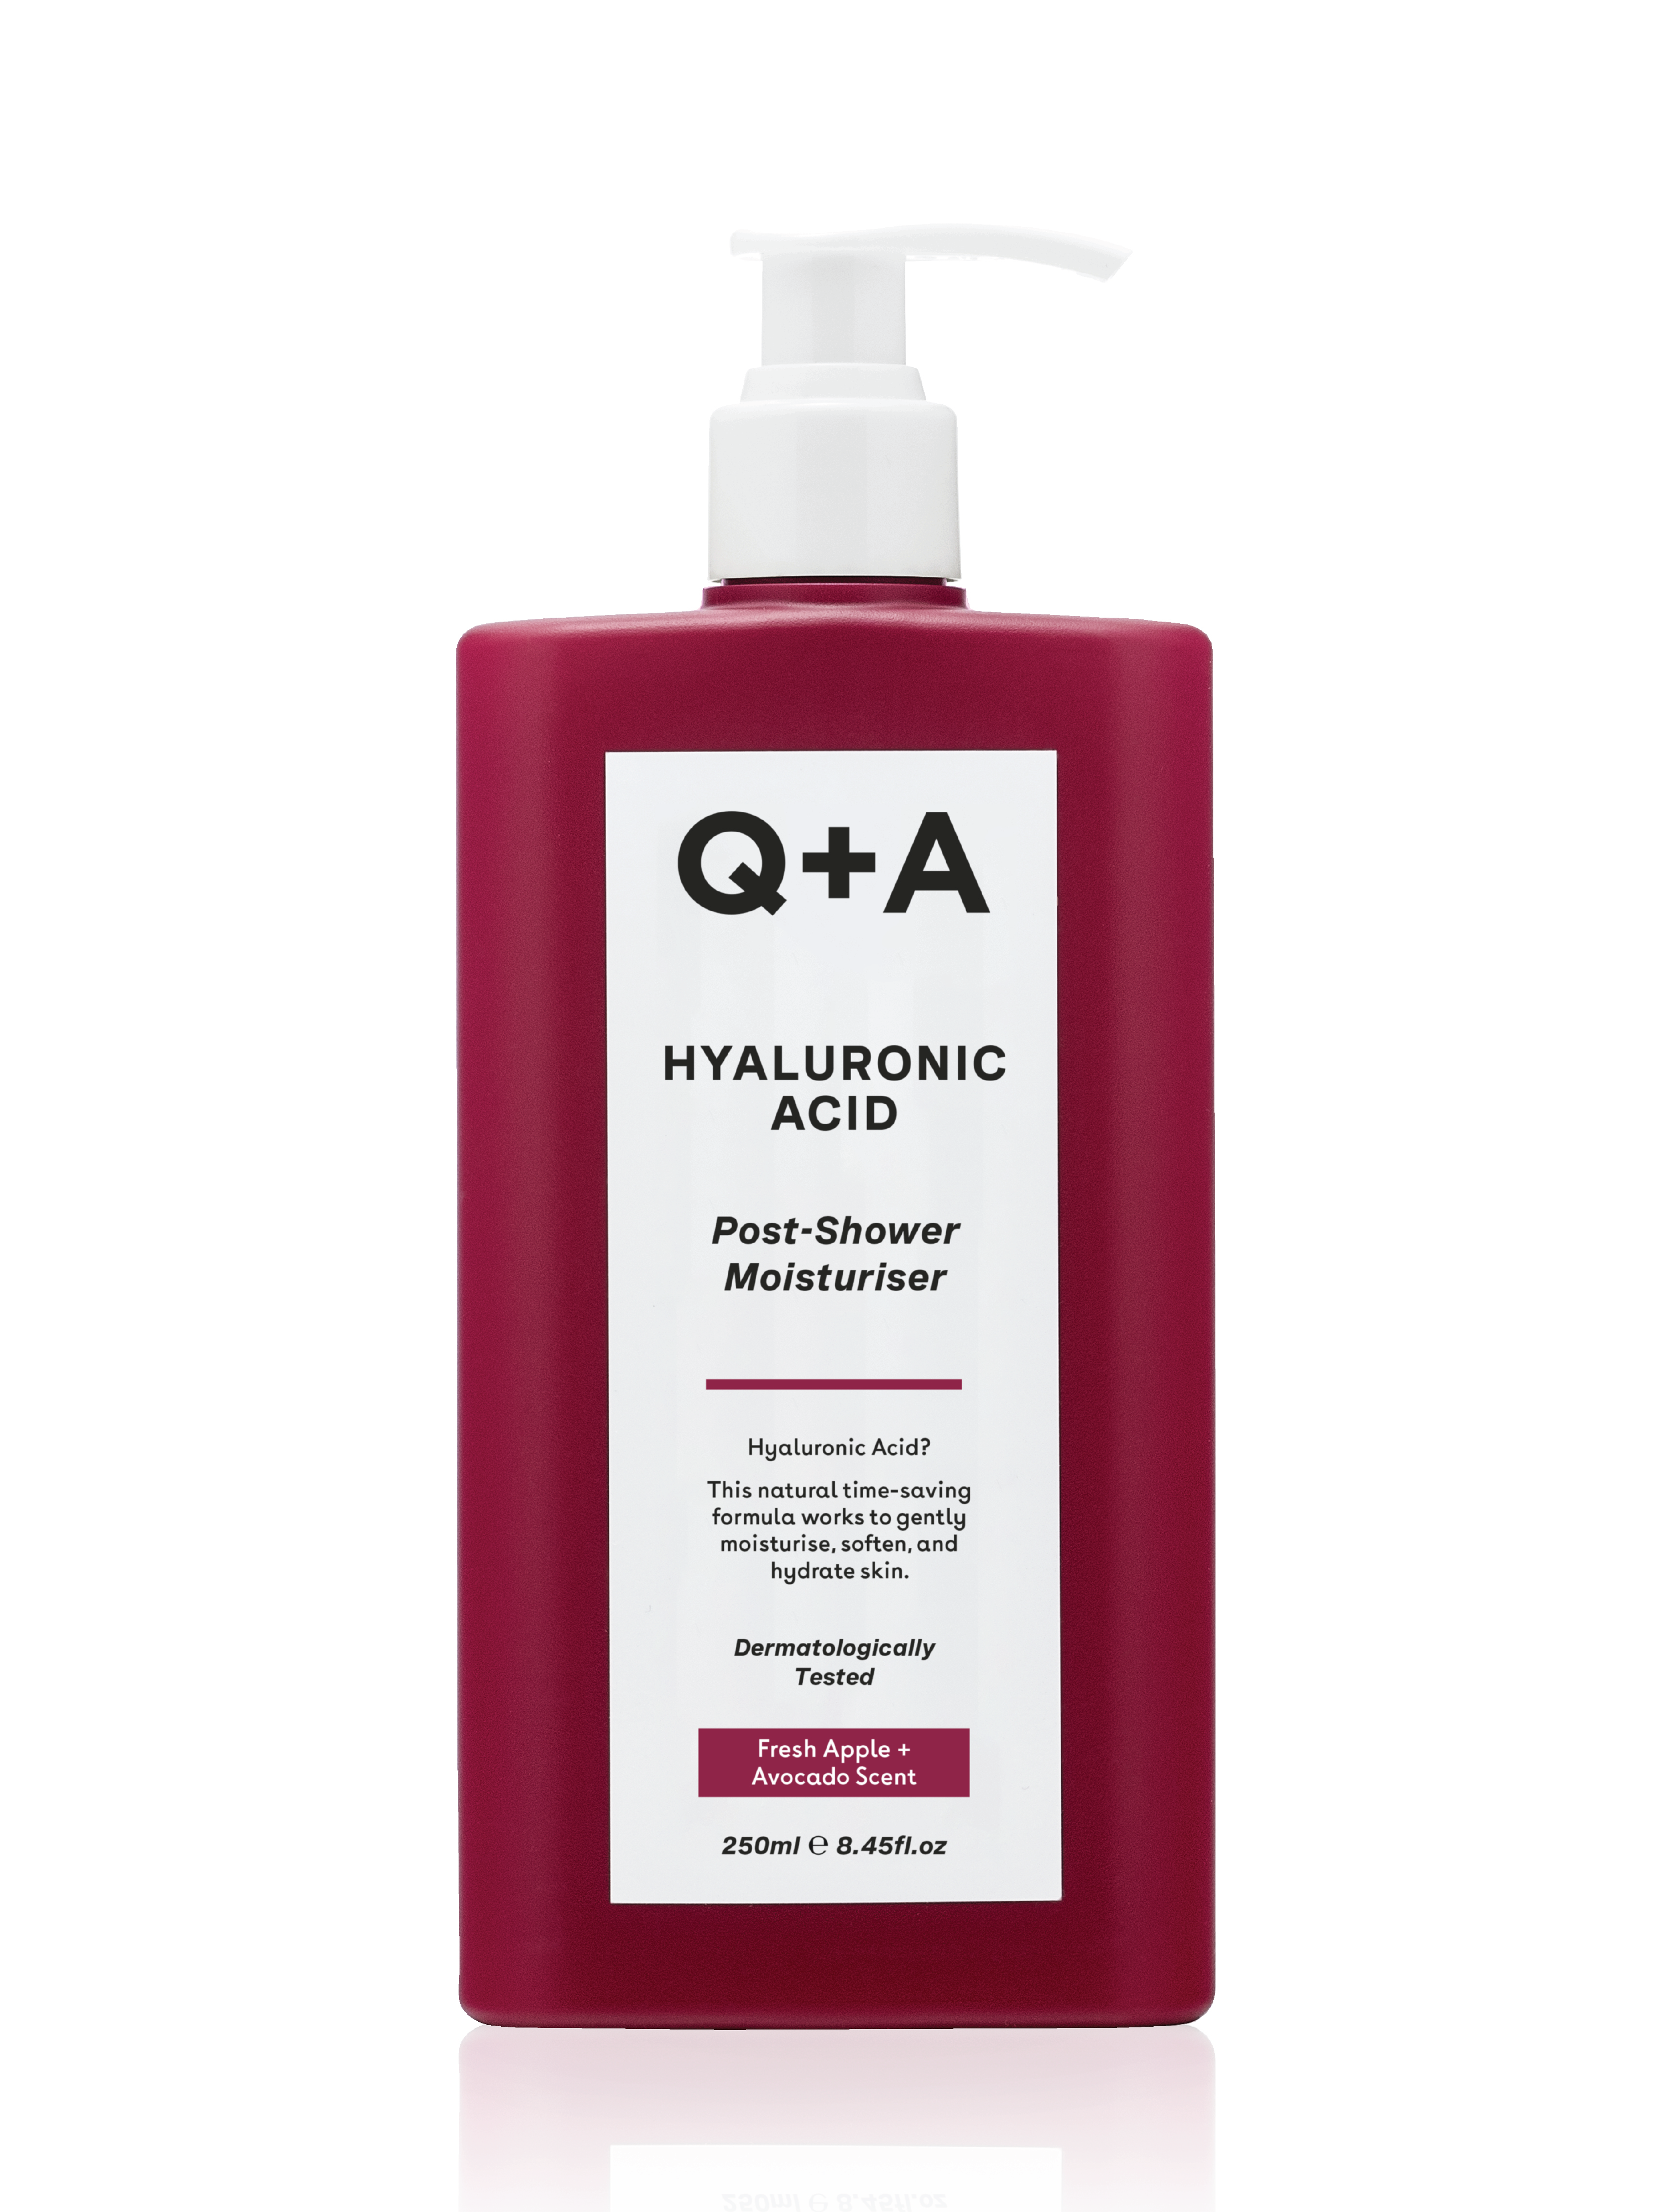 Q+A Hyaluronic Acid Post-Shower Moisturiser, 250 ml